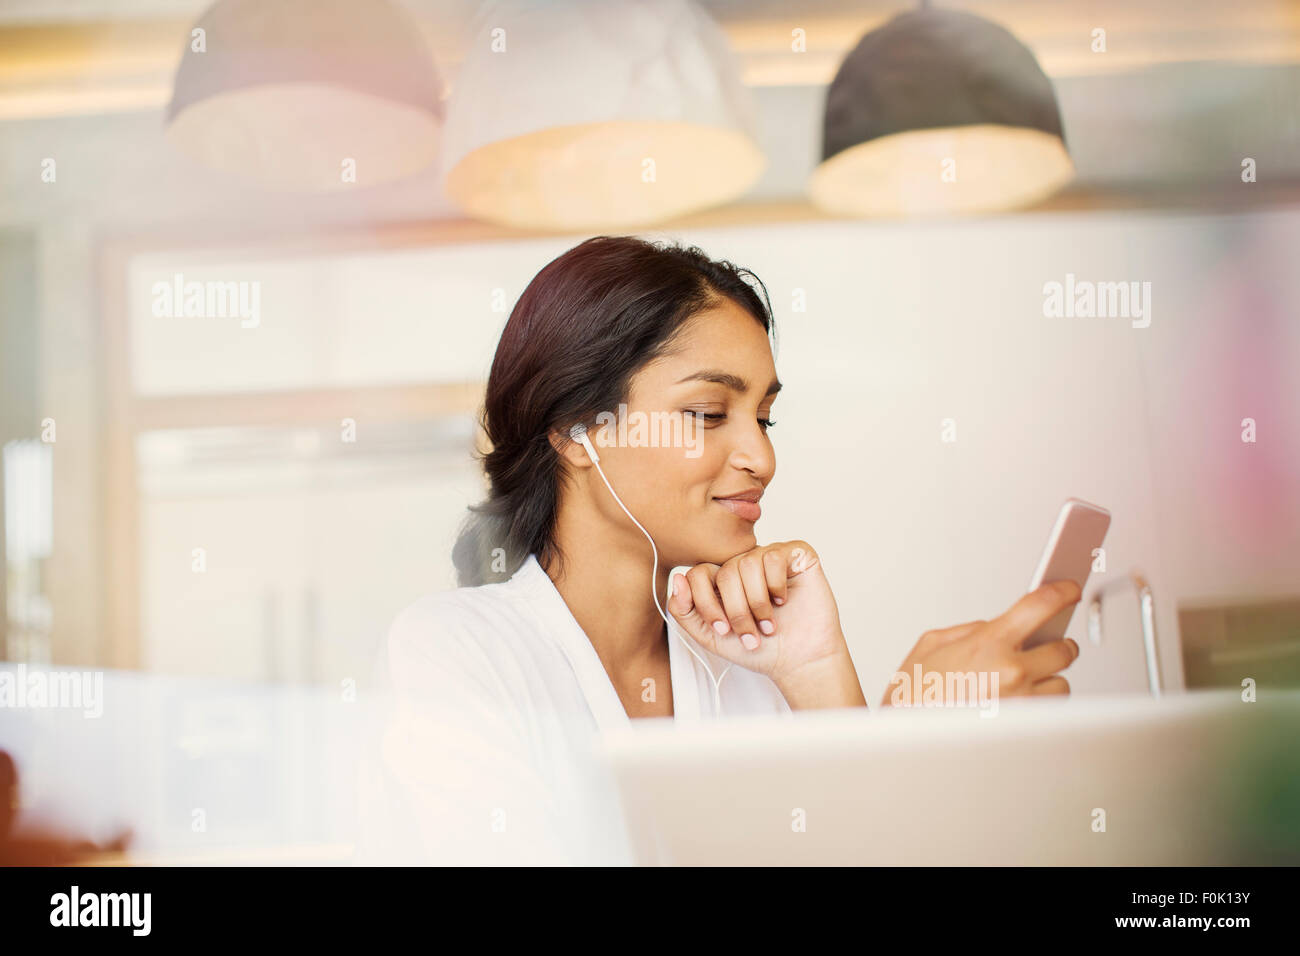 Frau mit Kopfhörern anhören von Musik auf MP3-player Stockfoto